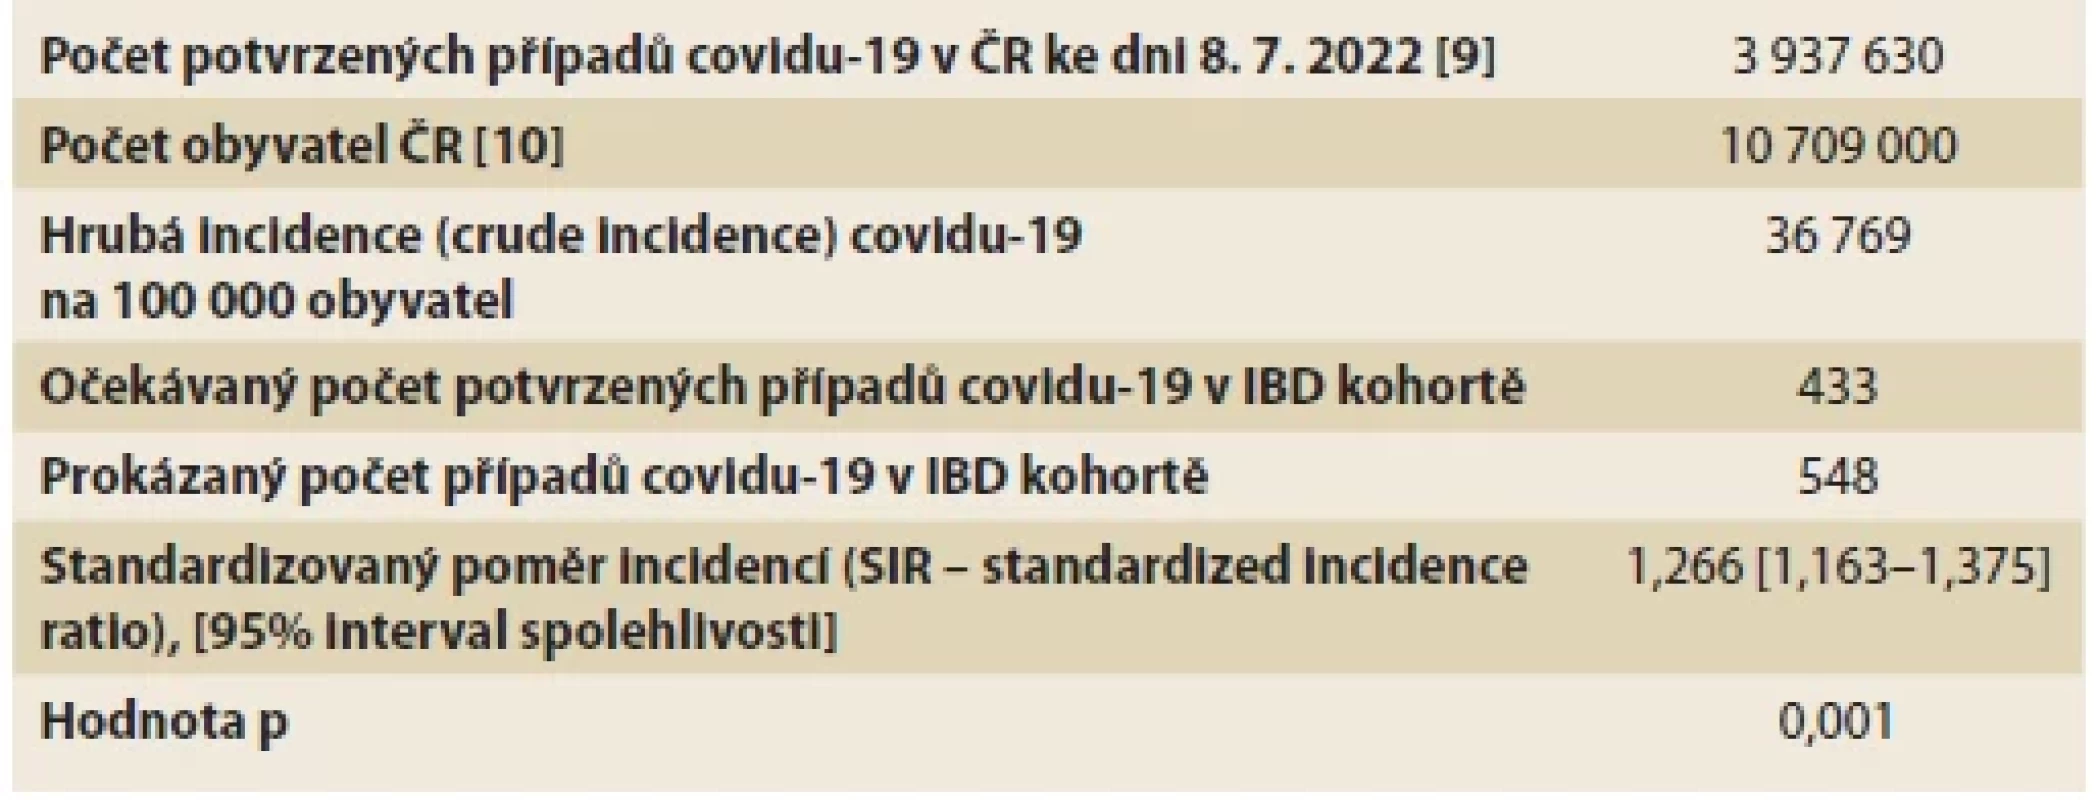 Podíl pozorovaného počtu případů covidu-19 ve sledované IBD kohortě
a počtu případů v celé české referenční populaci – standardizovaný poměr incidence
(SIR – standardized incidence ratio). <br> 
Tab. 1 Proportion of the observed COVID-19 cases number in the IBD cohort and the
number of COVID-19 cases in the whole Czech population – standardized incidence ratio
(SIR).